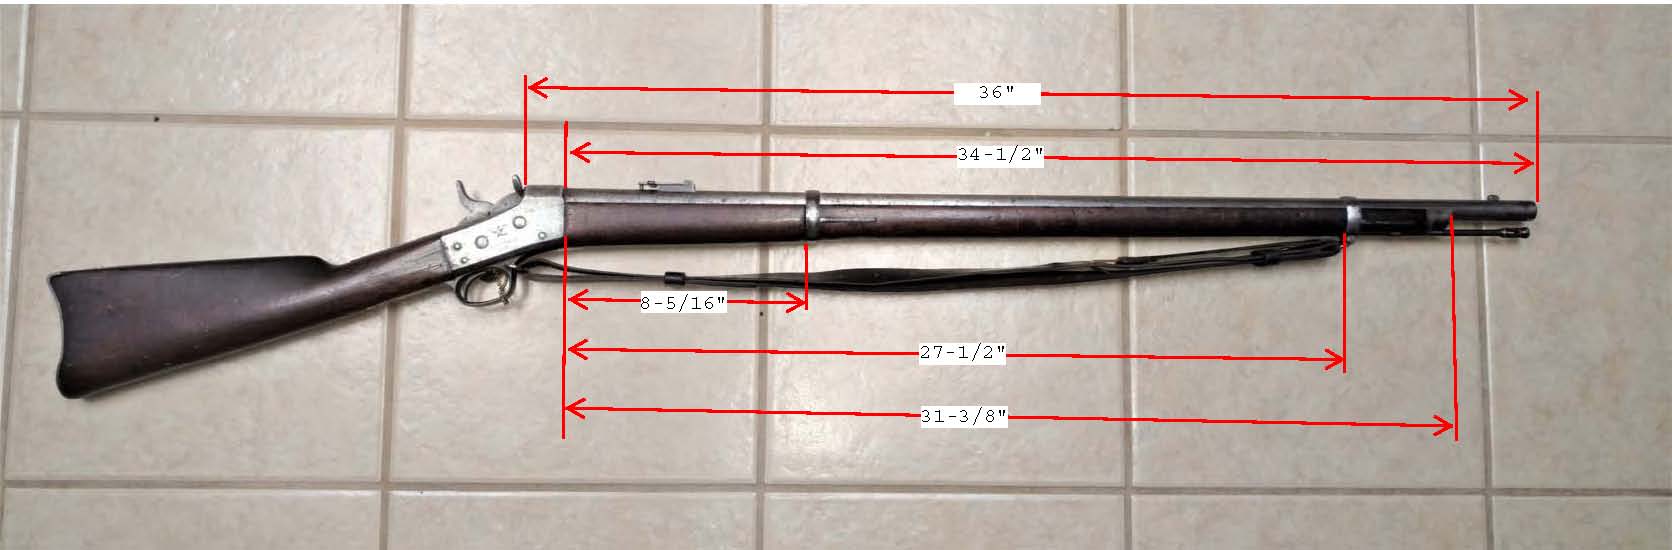 1870 Trials Rifle.jpg